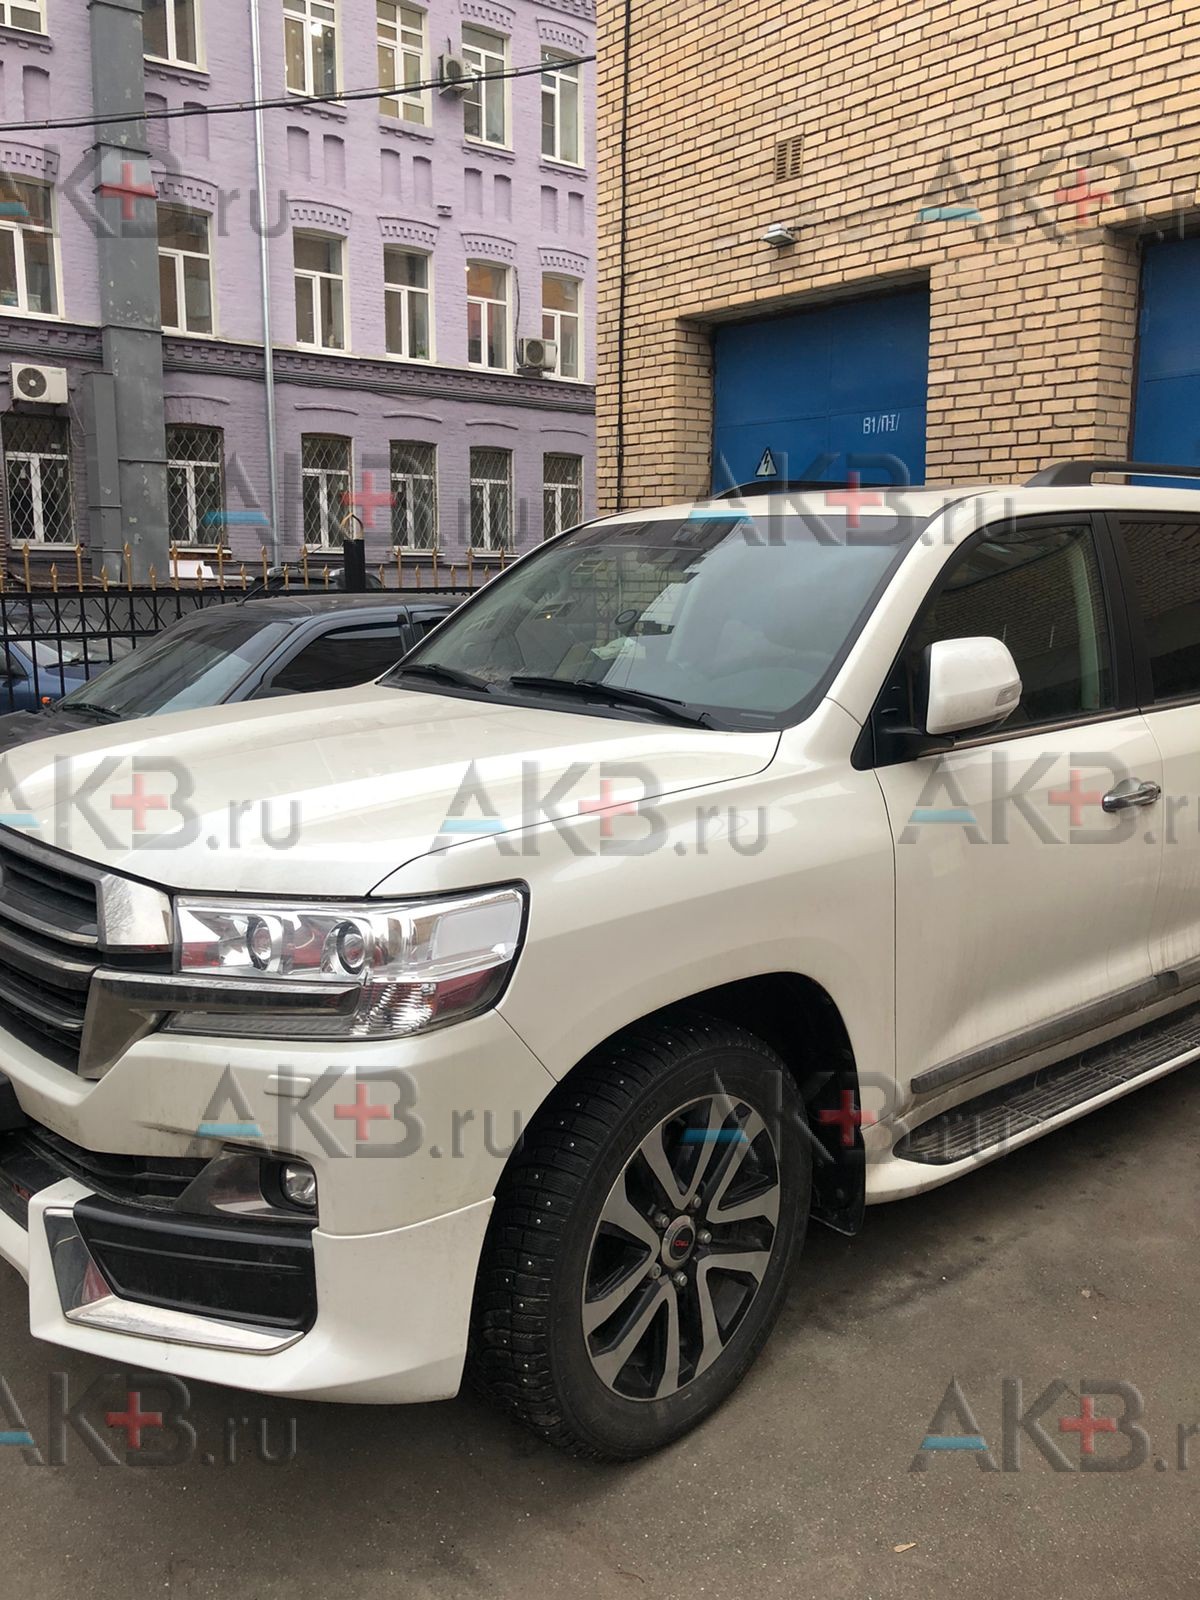 Цены на Замену стартера для Toyota Land Cruiser 200 в Киеве